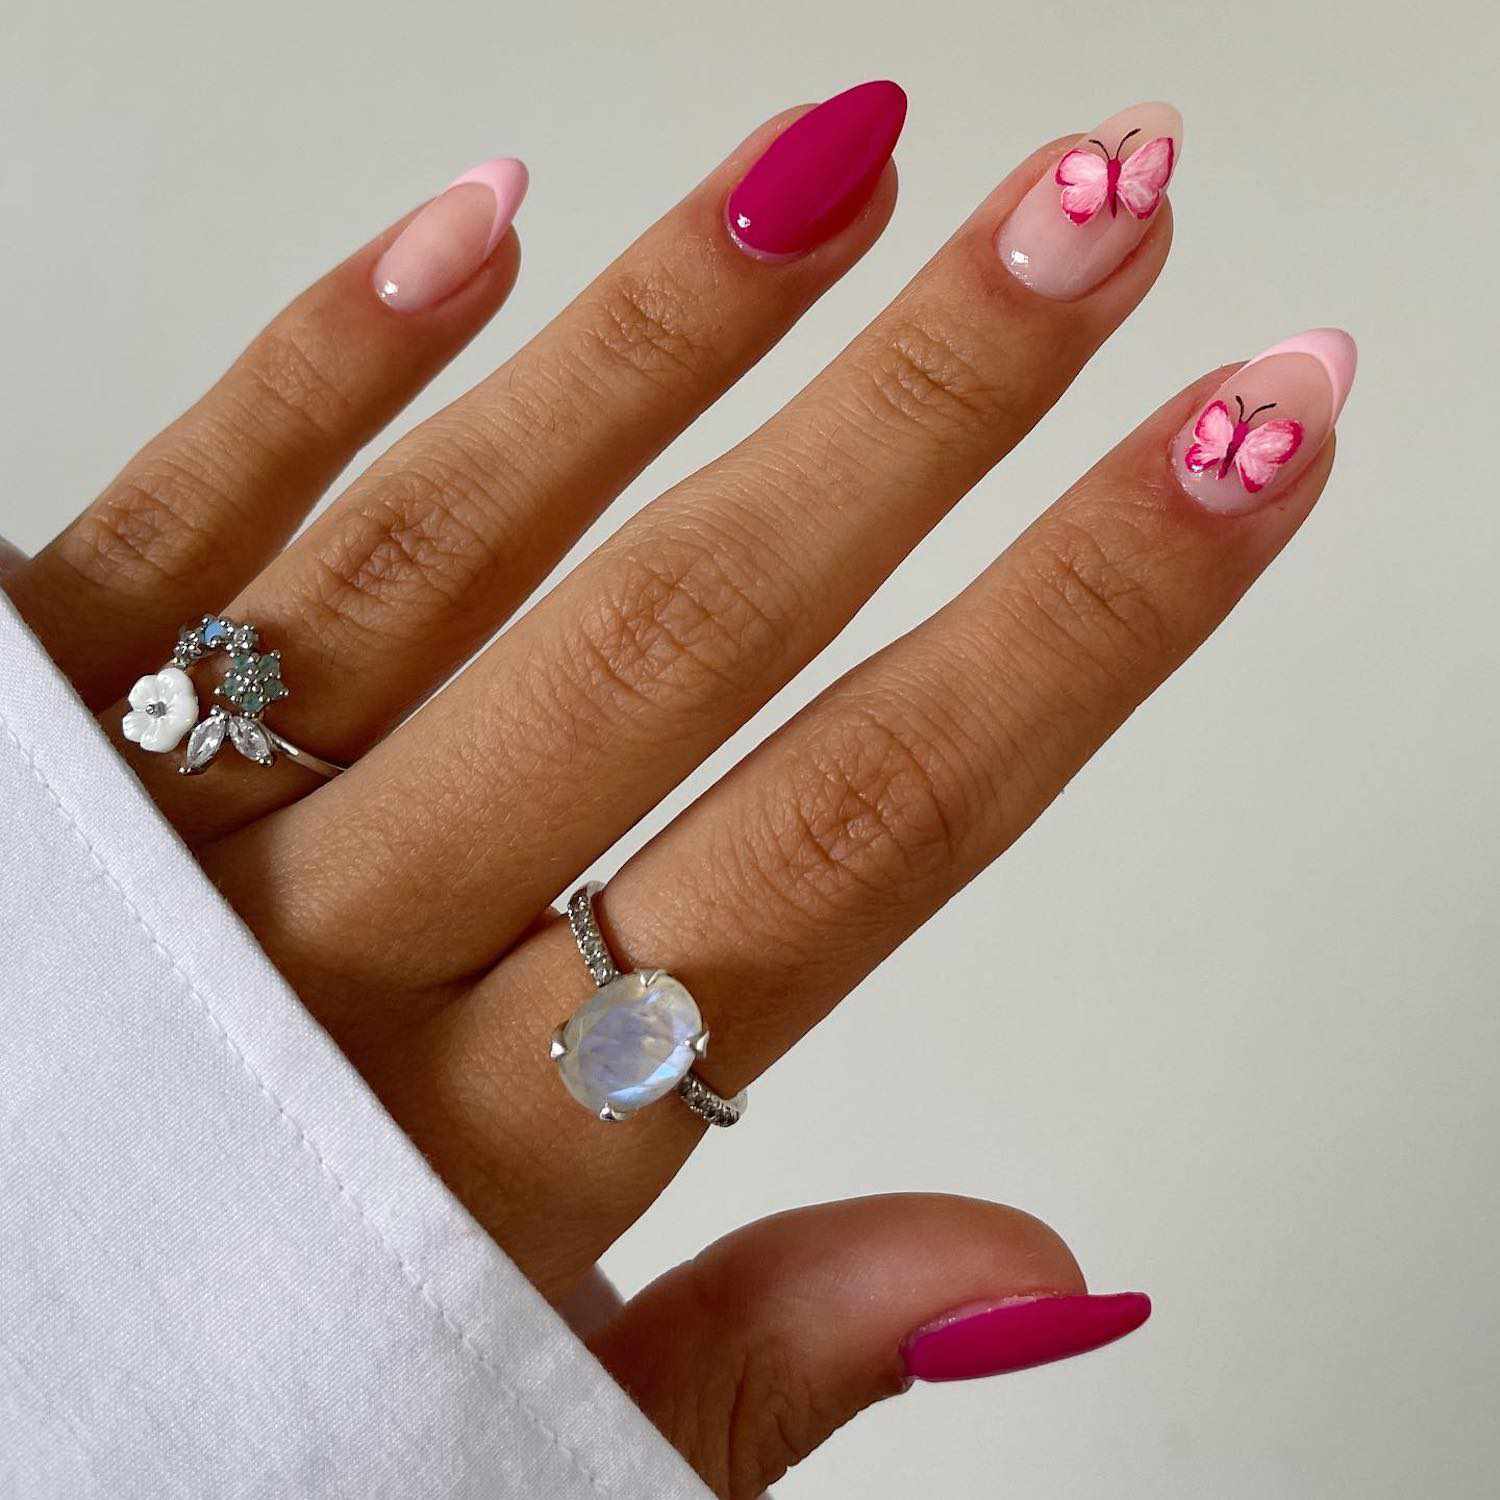 Manicure com unhas rosa quente e lisa e unhas francesas rosa pastel com um design na forma de borboletas rosa